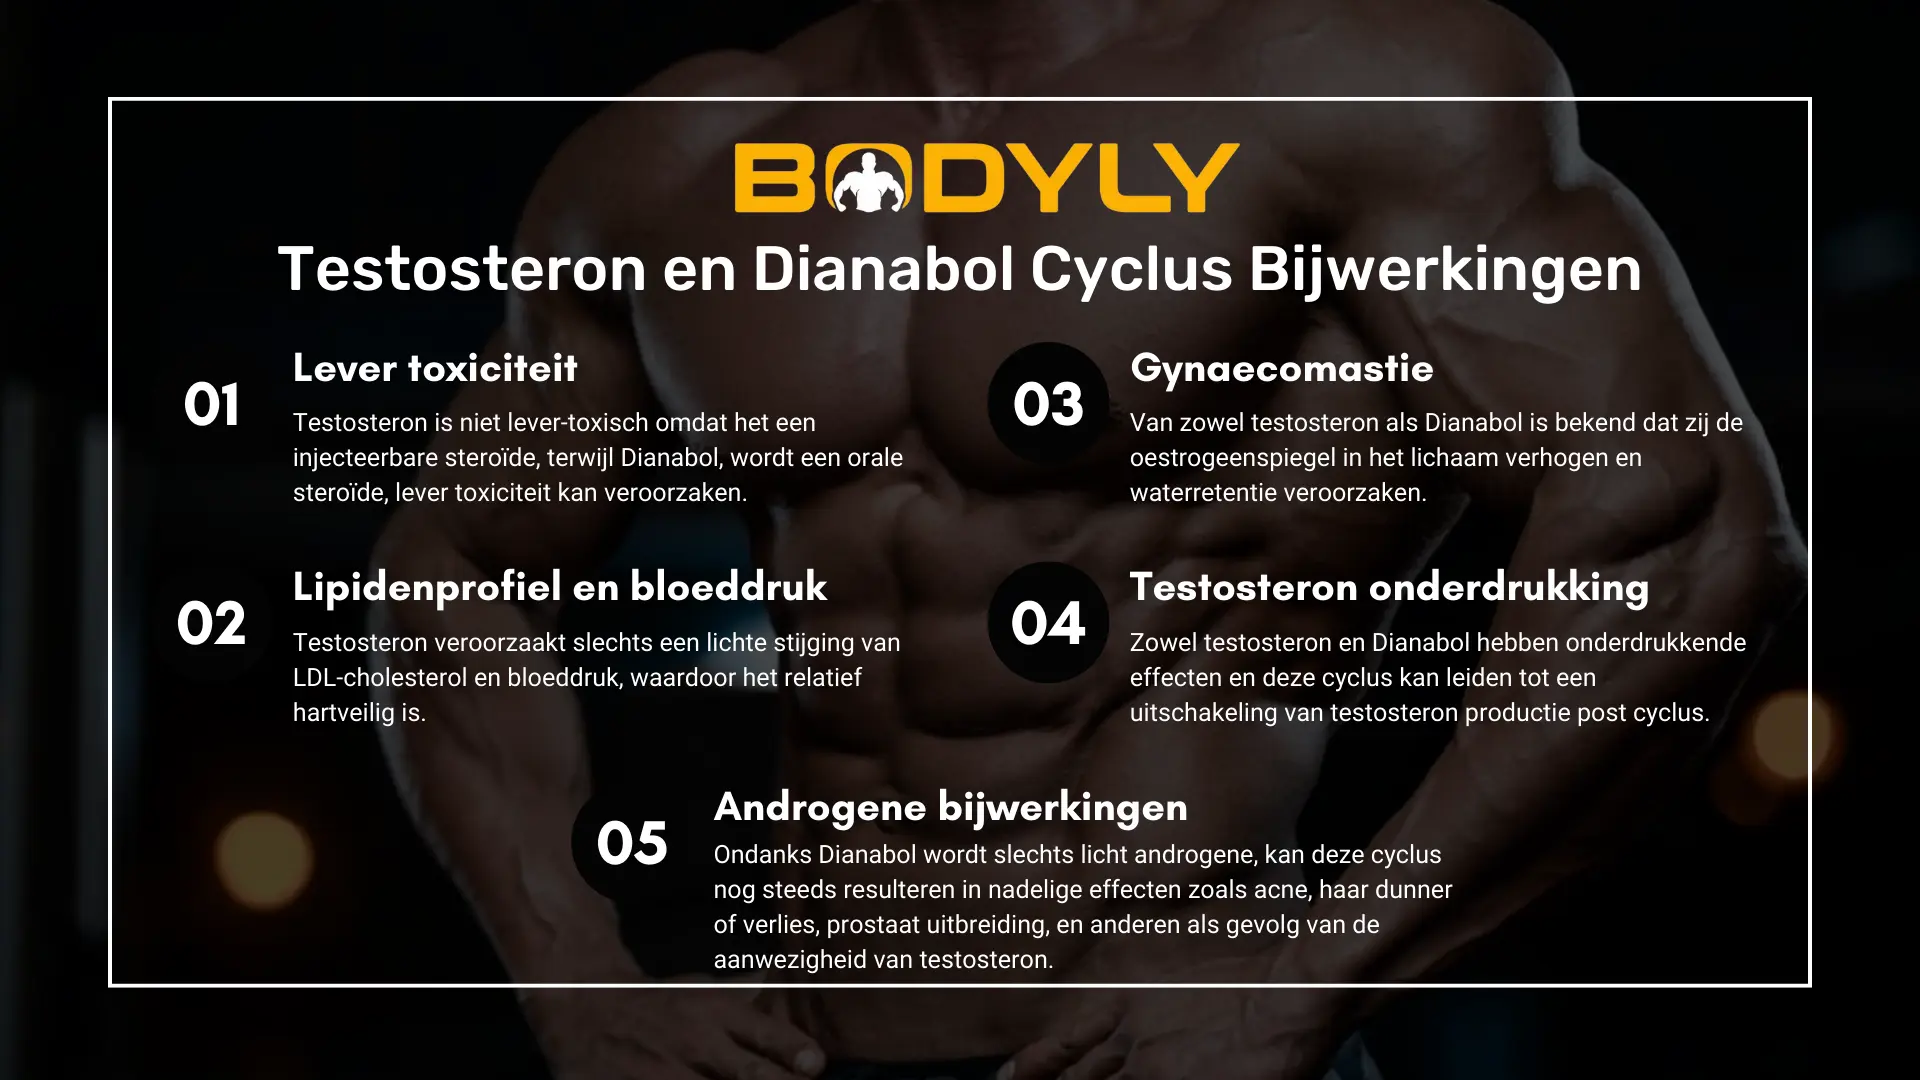 Testosteron en Dianabol Cyclus Bijwerkingen